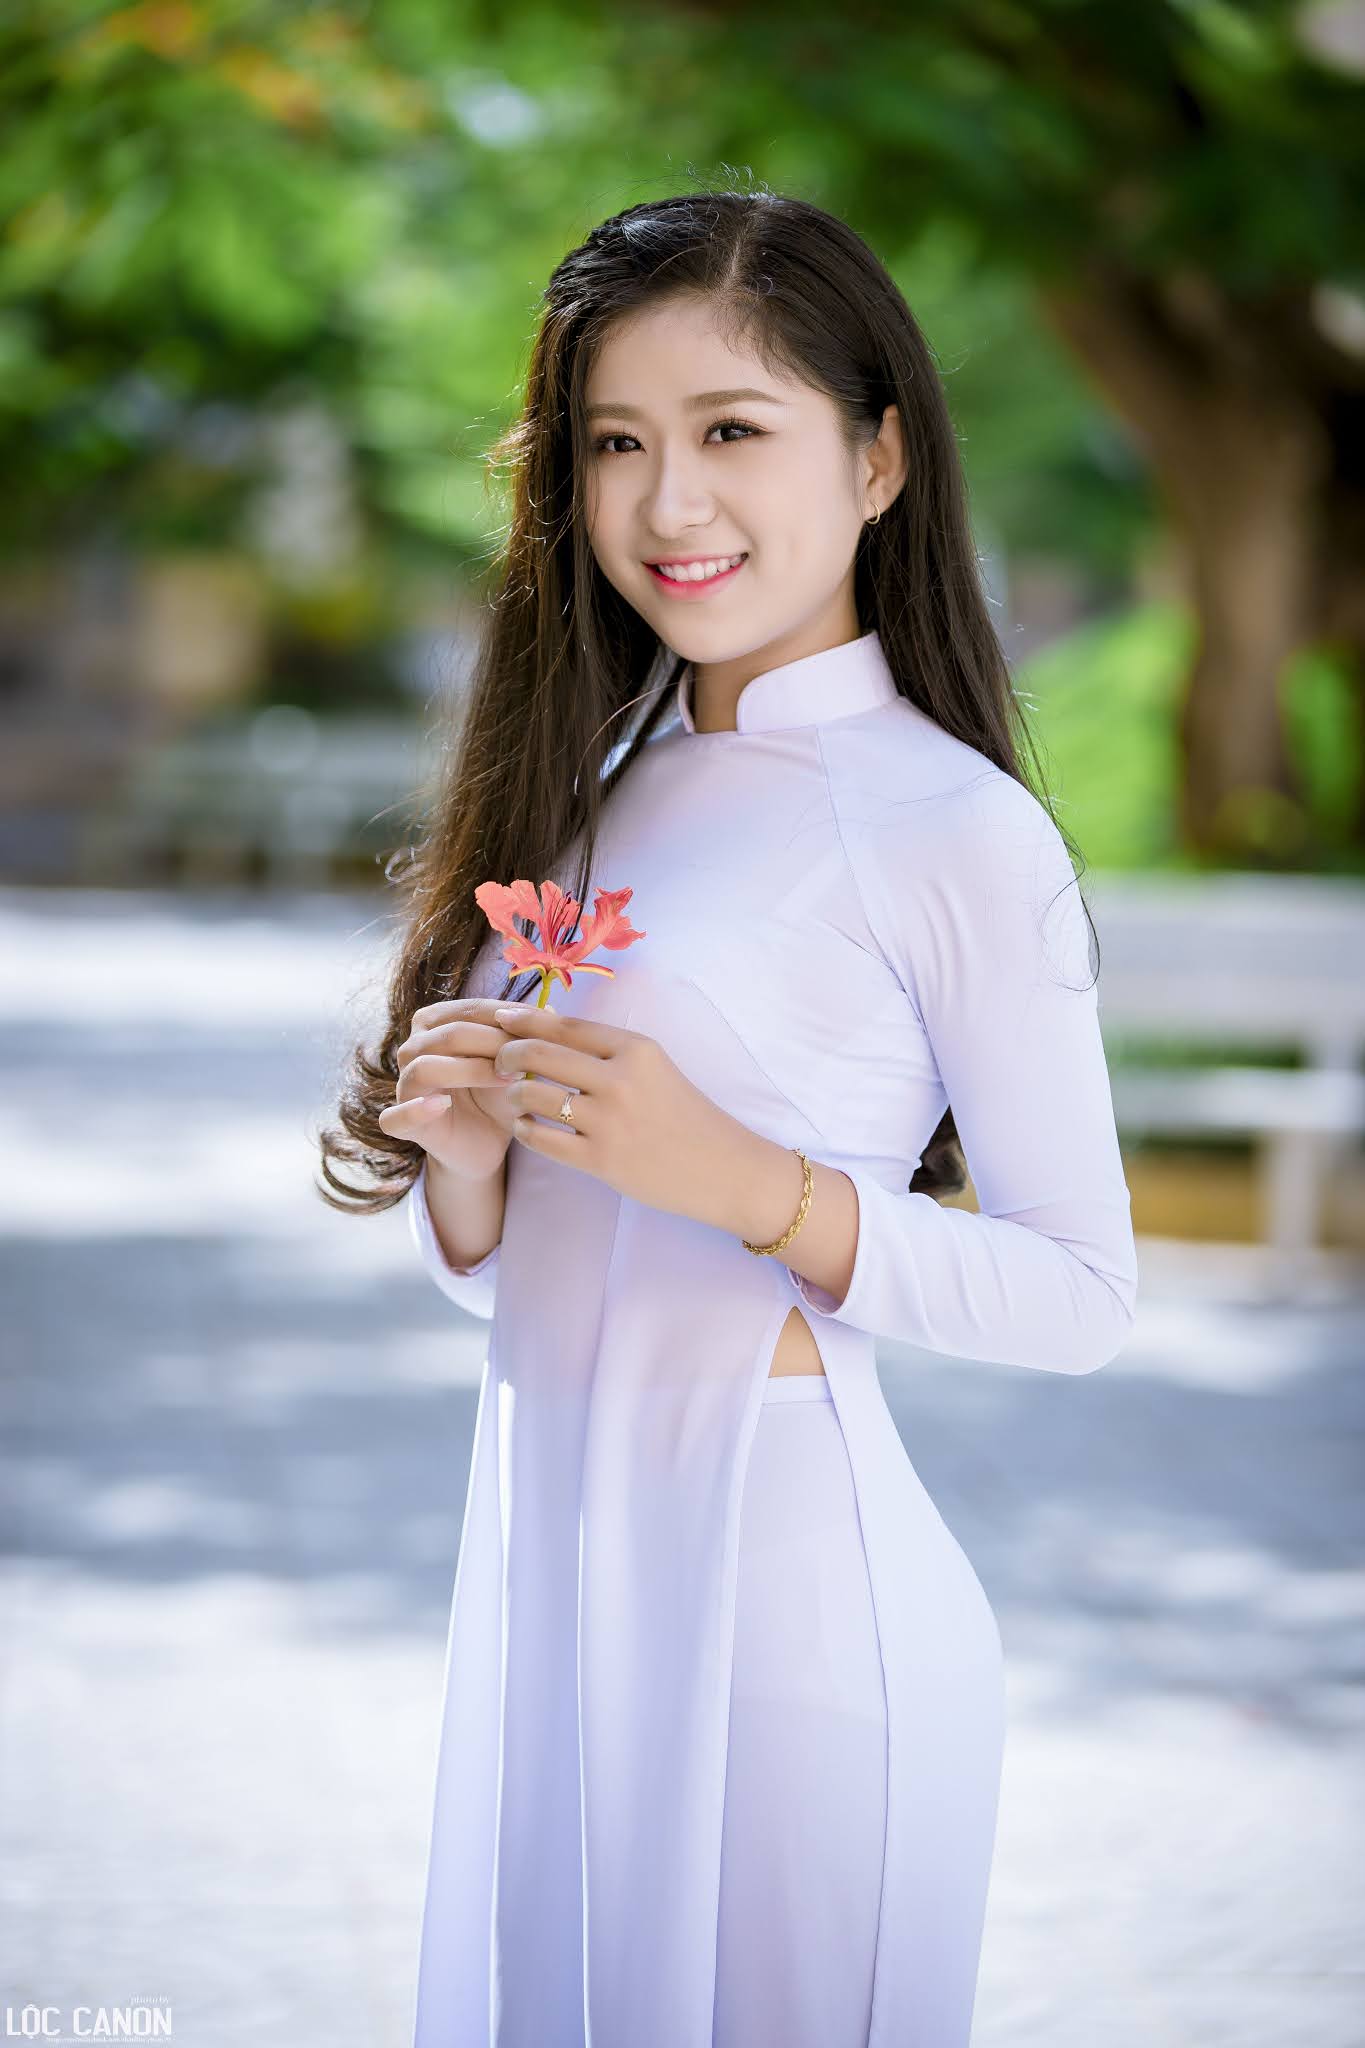 Tuyển tập girl xinh gái đẹp Việt Nam mặc áo dài đẹp mê hồn #39 - 6